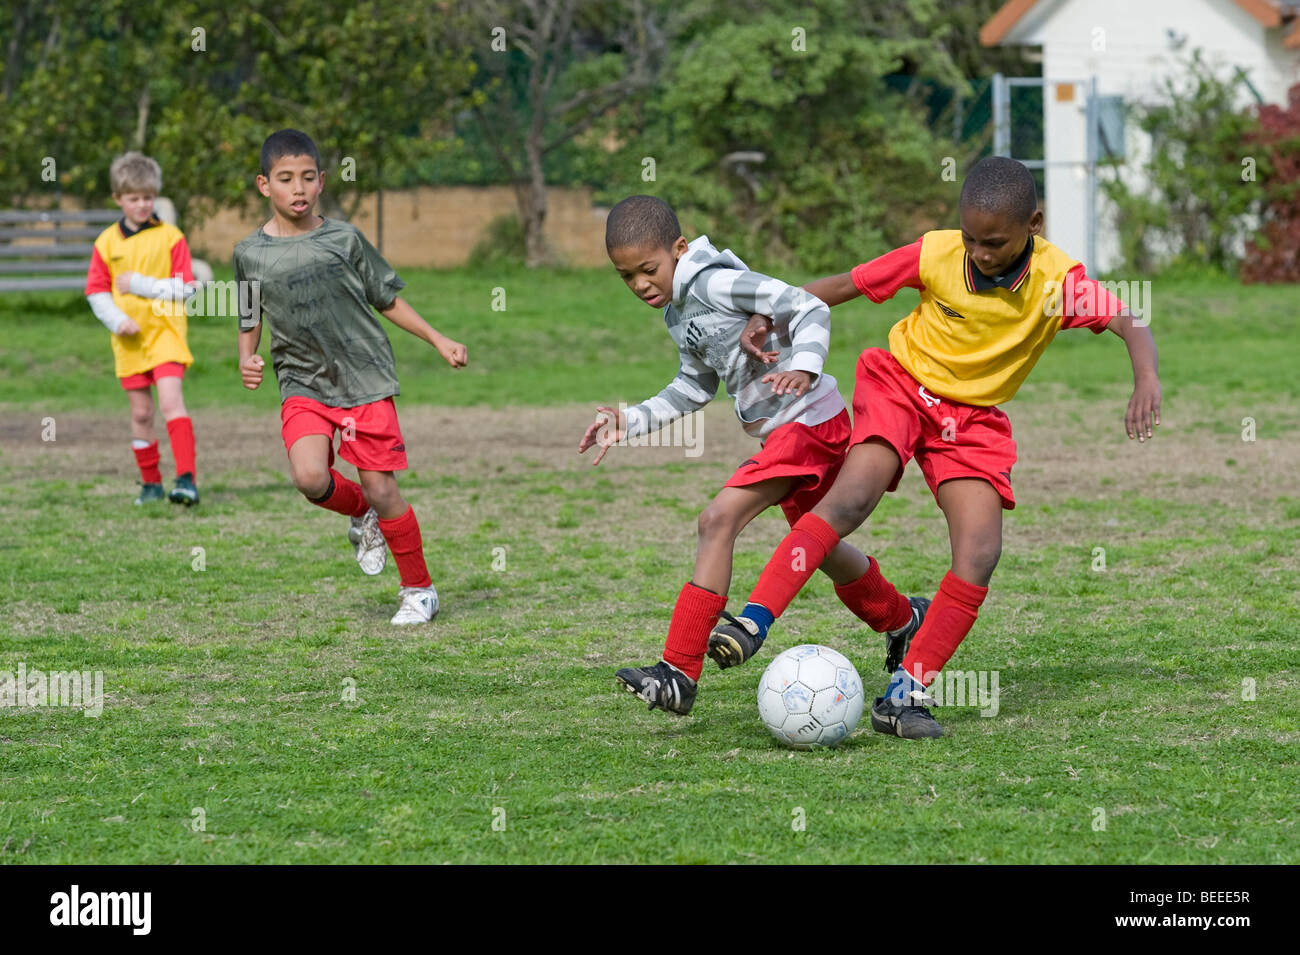 Enfants jouant un match de football, Le Cap, Afrique du Sud Banque D'Images